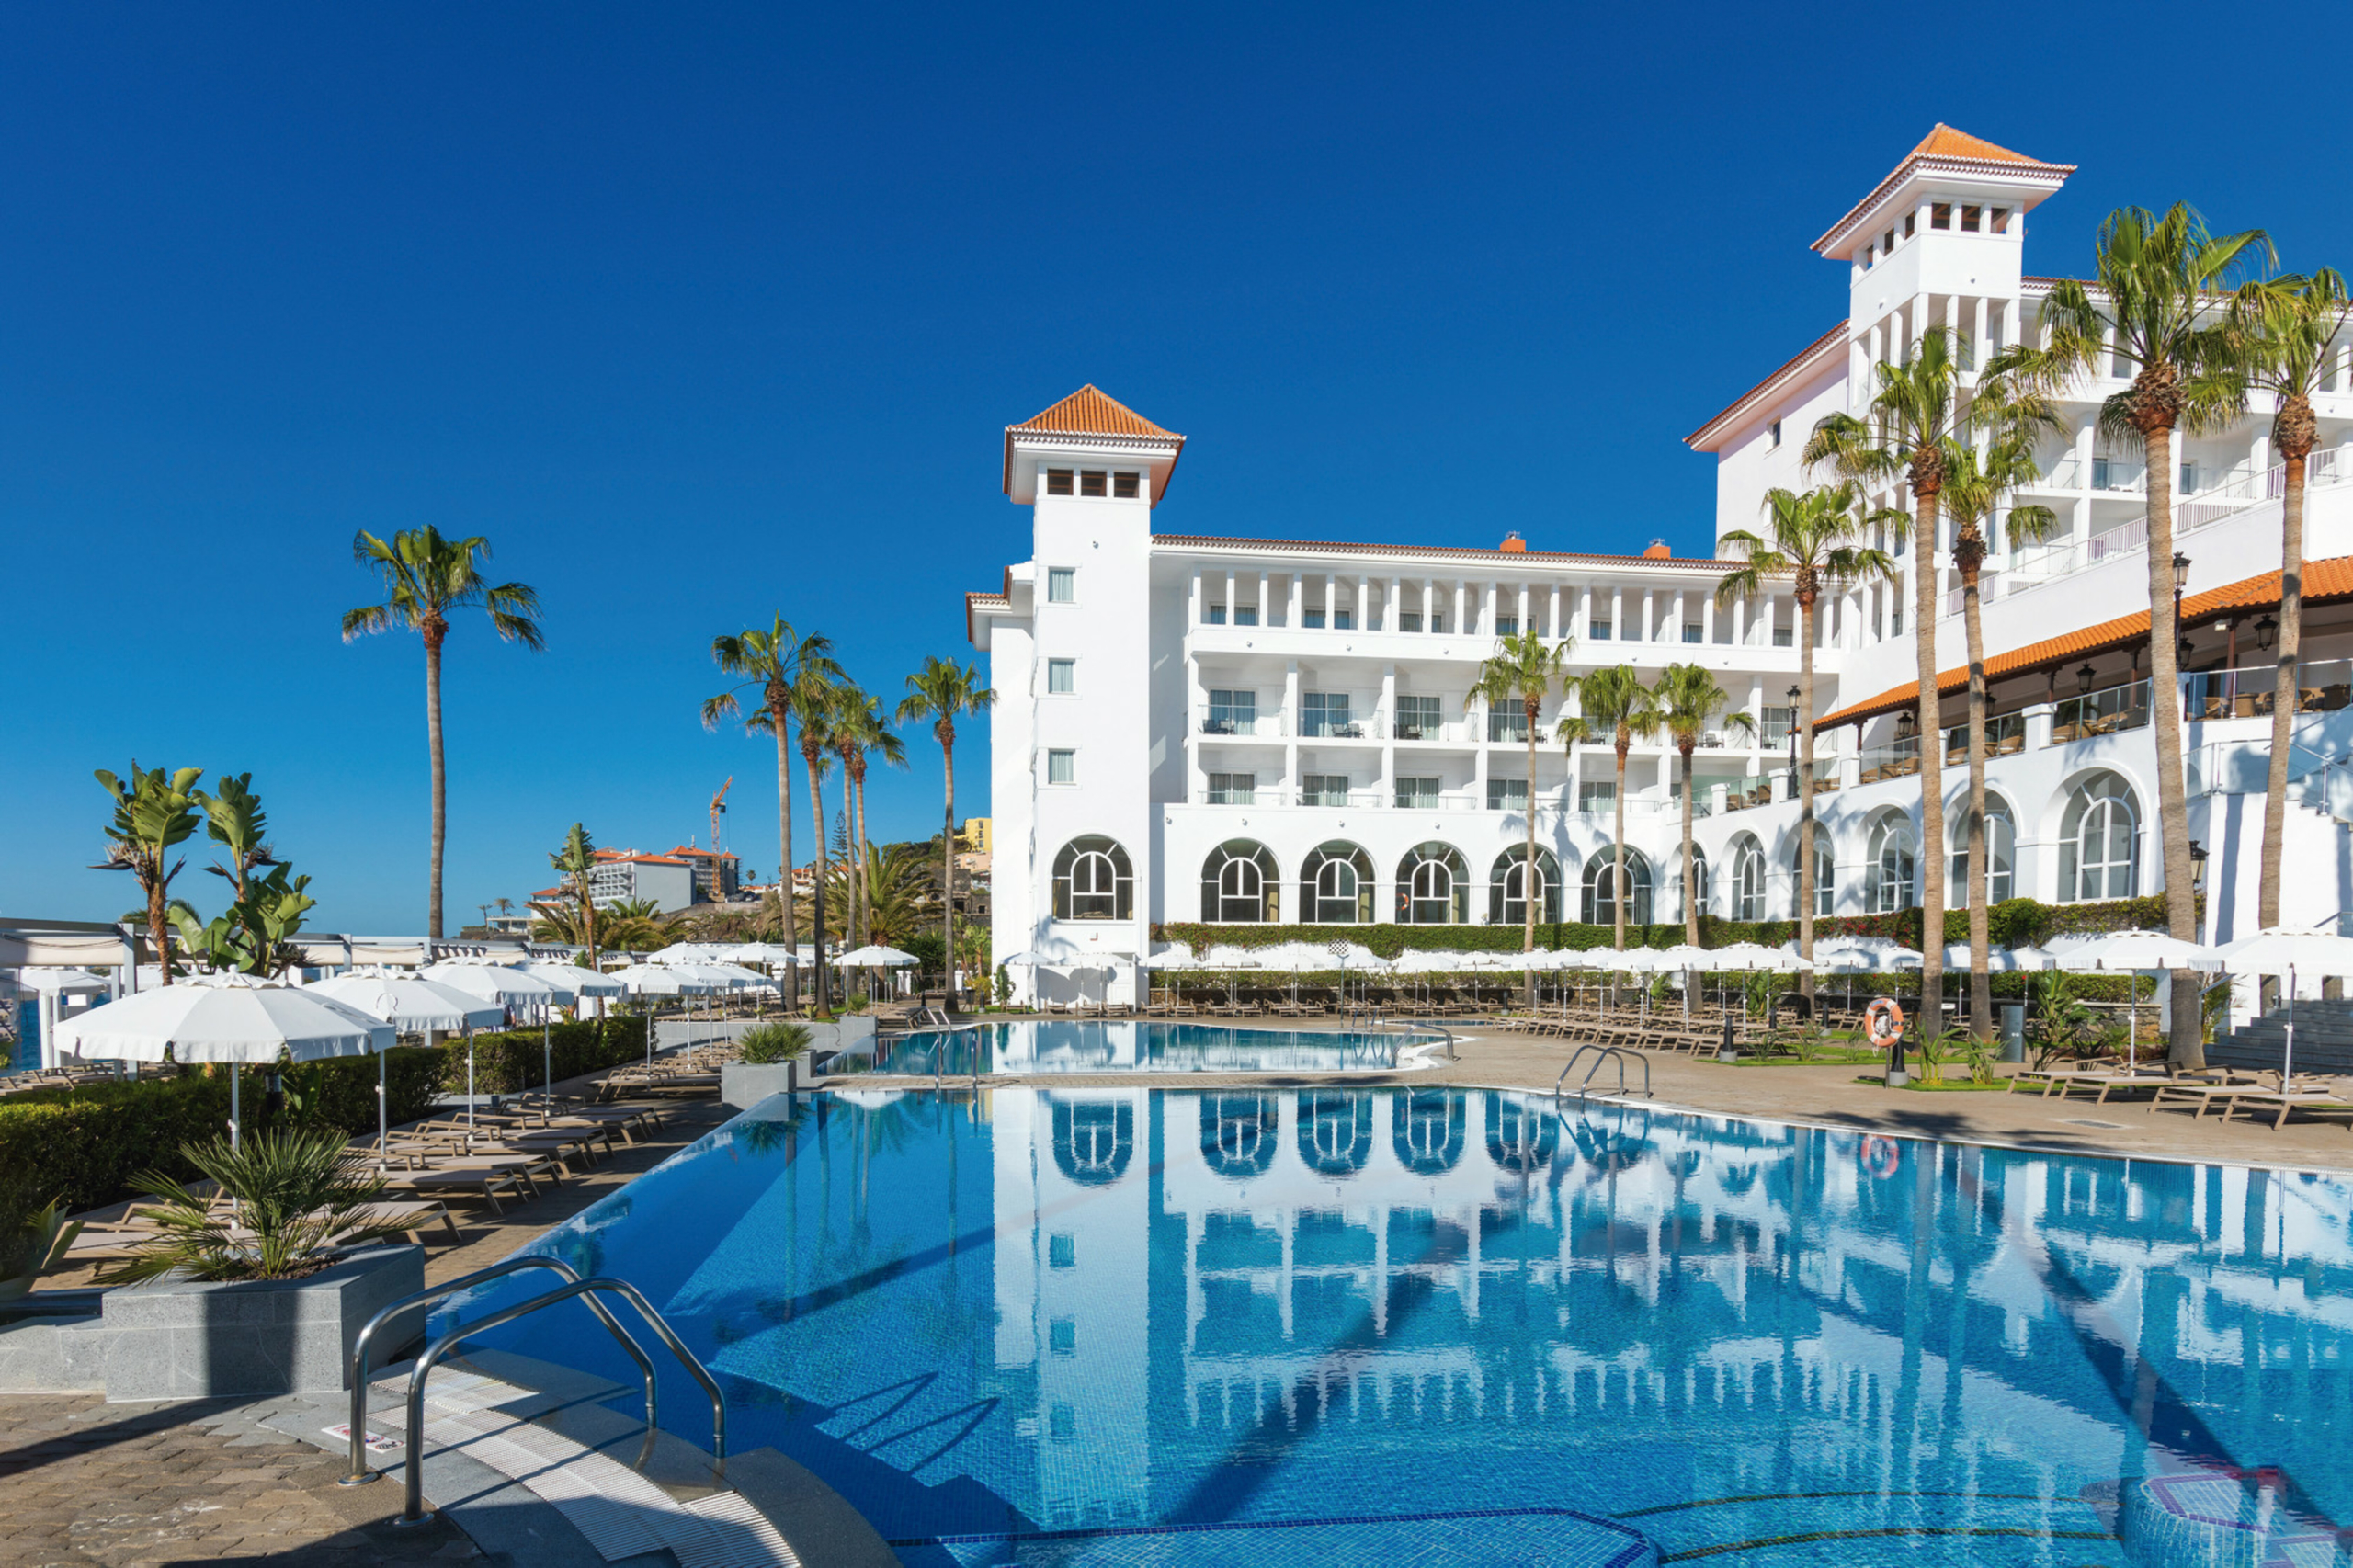 Das Hotel Riu Madeira öffnet nach vollständiger Renovierung